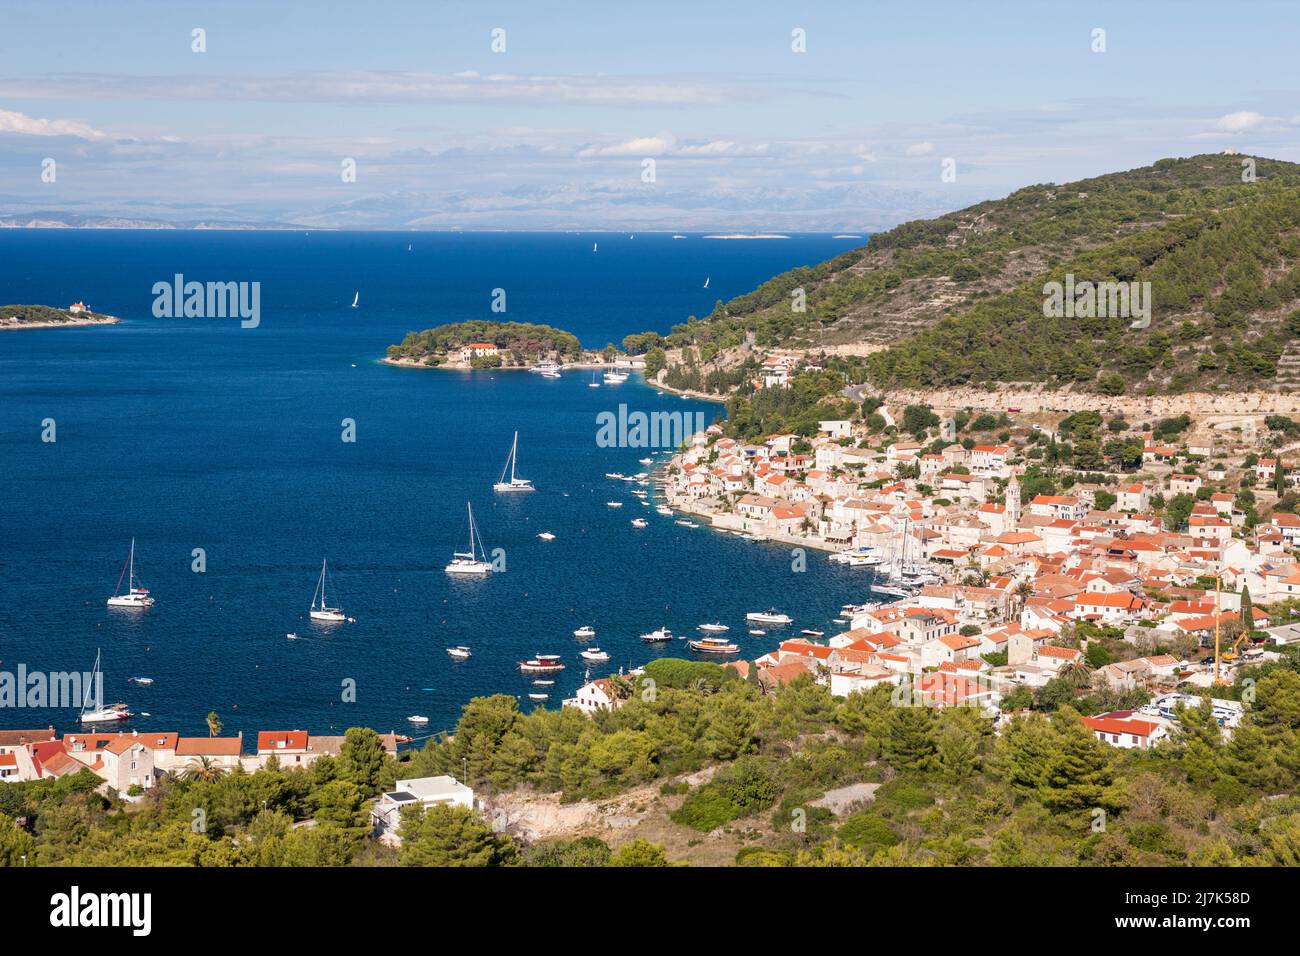 Stadt und Bucht von Vis, Insel Vis, Mittelmeer, Kroatien Stockfoto